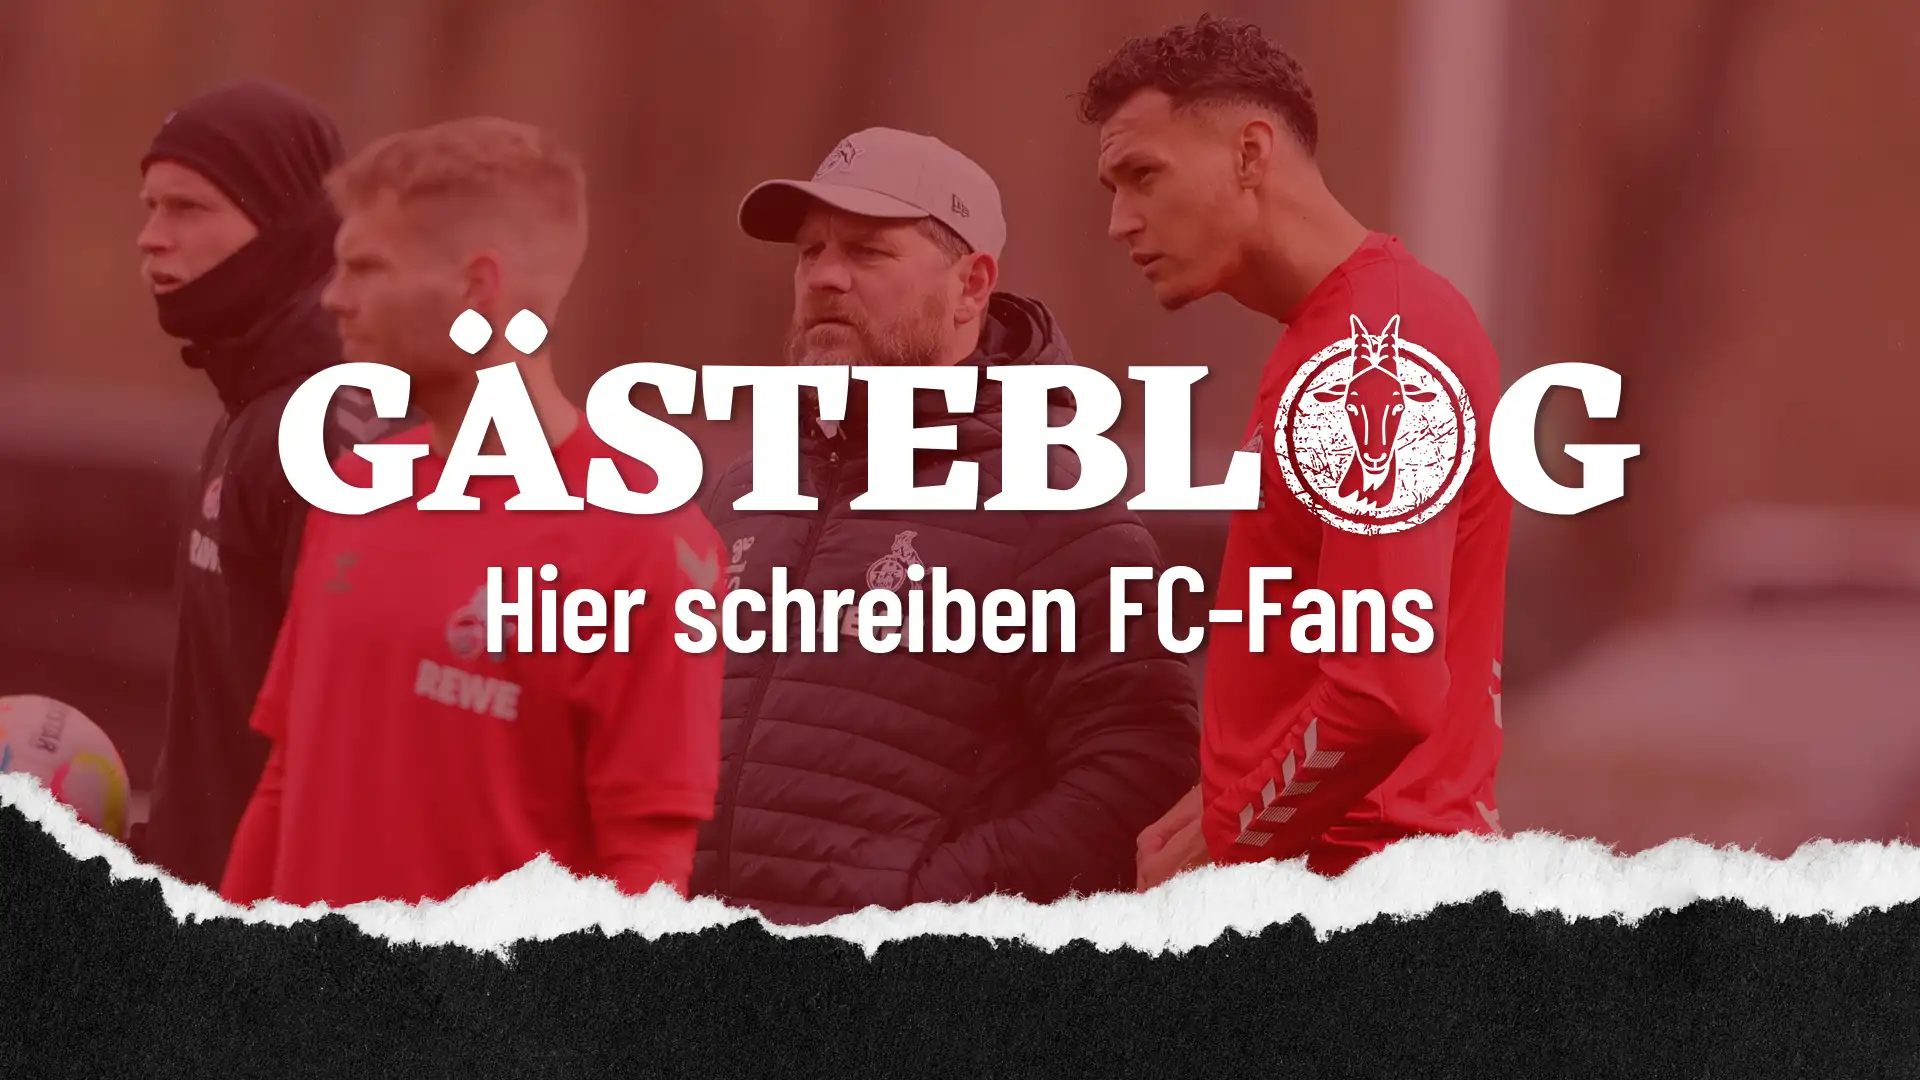 Beim "GÄSTEBLOG" können die FC-Fans ihre Meinung zur aktuellen Situation beim 1. FC Köln äußern. (Foto: Bucco)